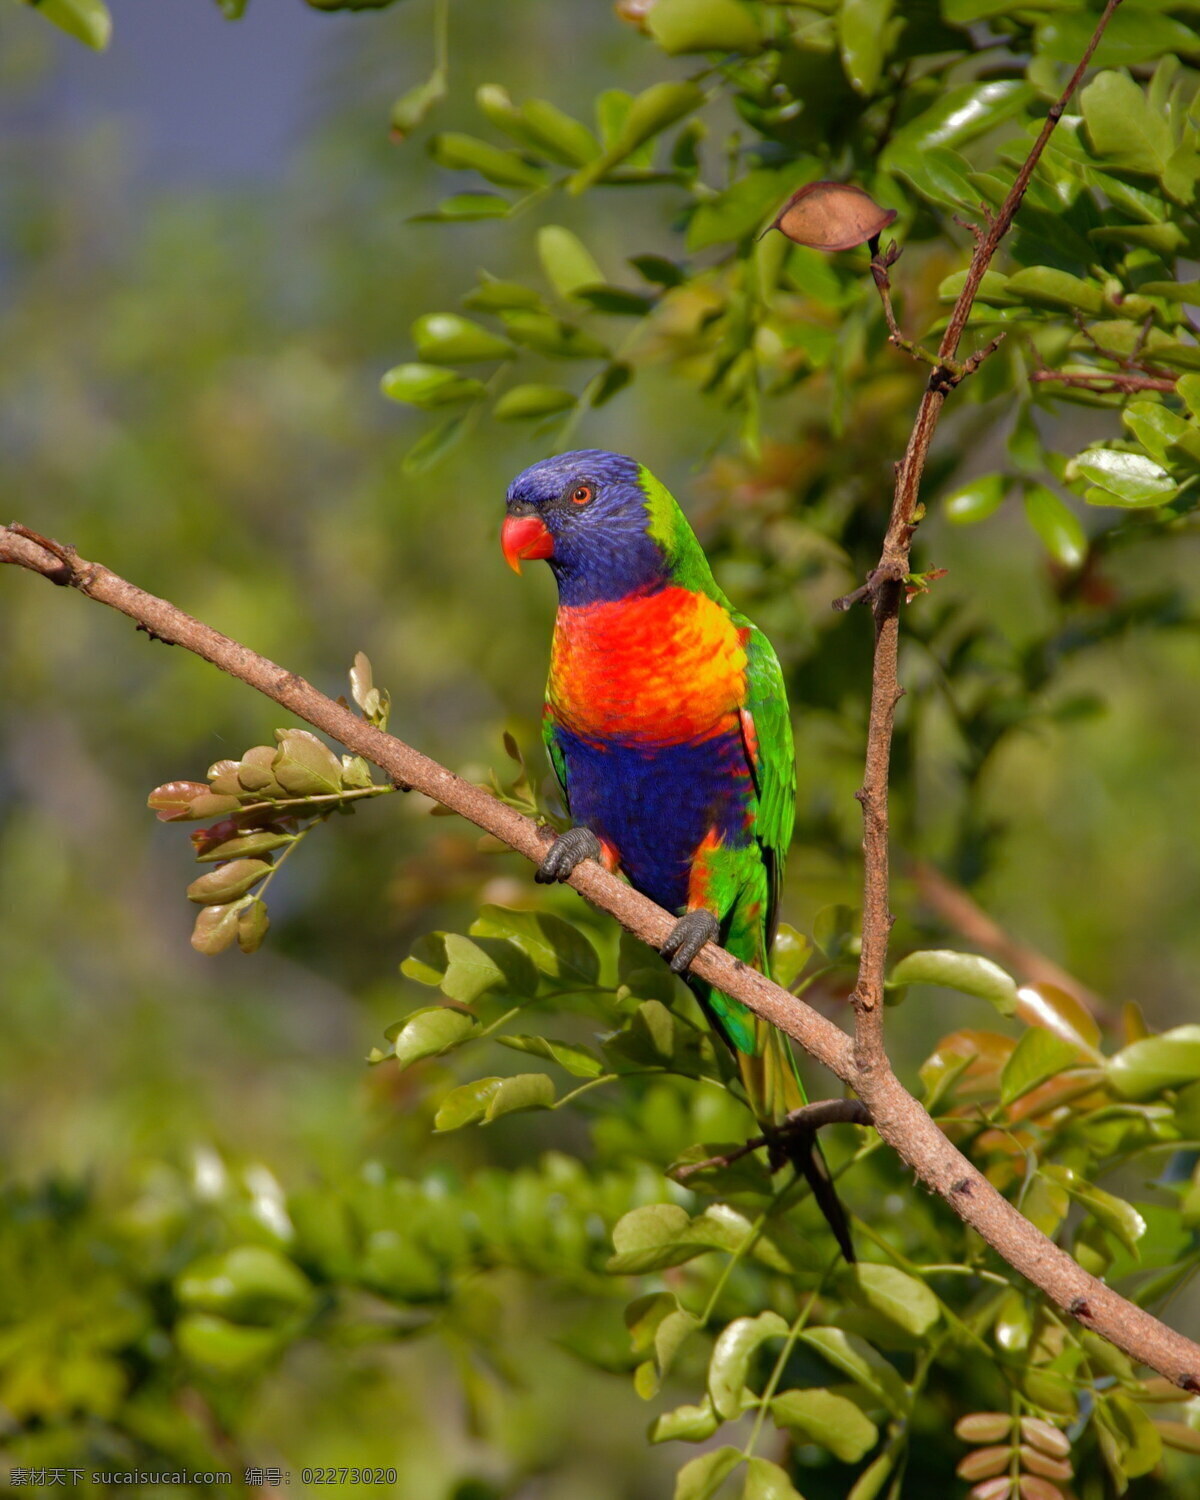 高清 彩色 鹦鹉 澳洲鹦鹉 鹦哥 彩虹鹦鹉 小鸟